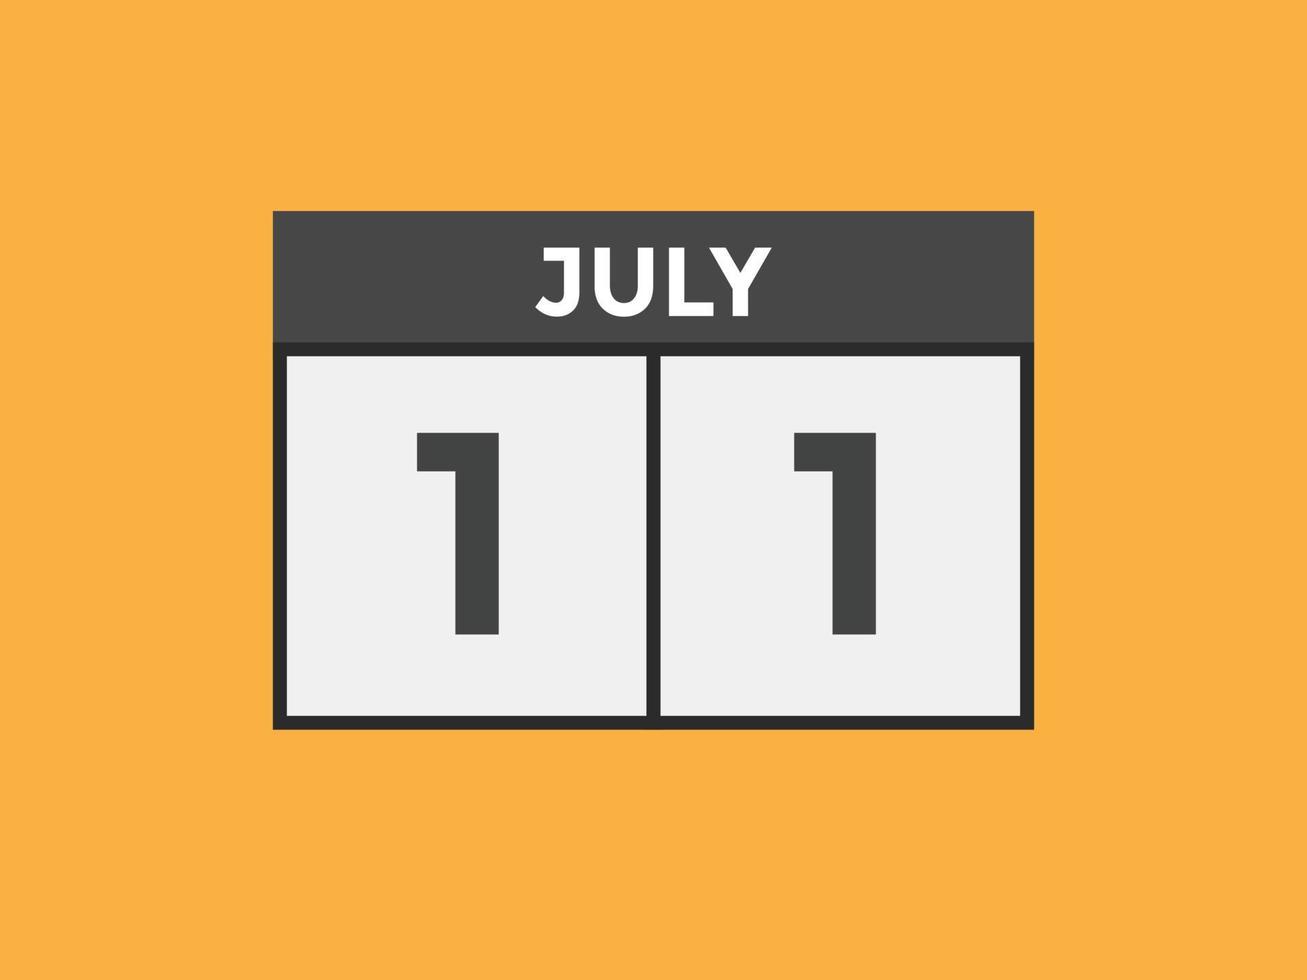 lembrete de calendário de 11 de julho. Modelo de ícone de calendário diário de 11 de julho. modelo de design de ícone de calendário 11 de julho. ilustração vetorial vetor